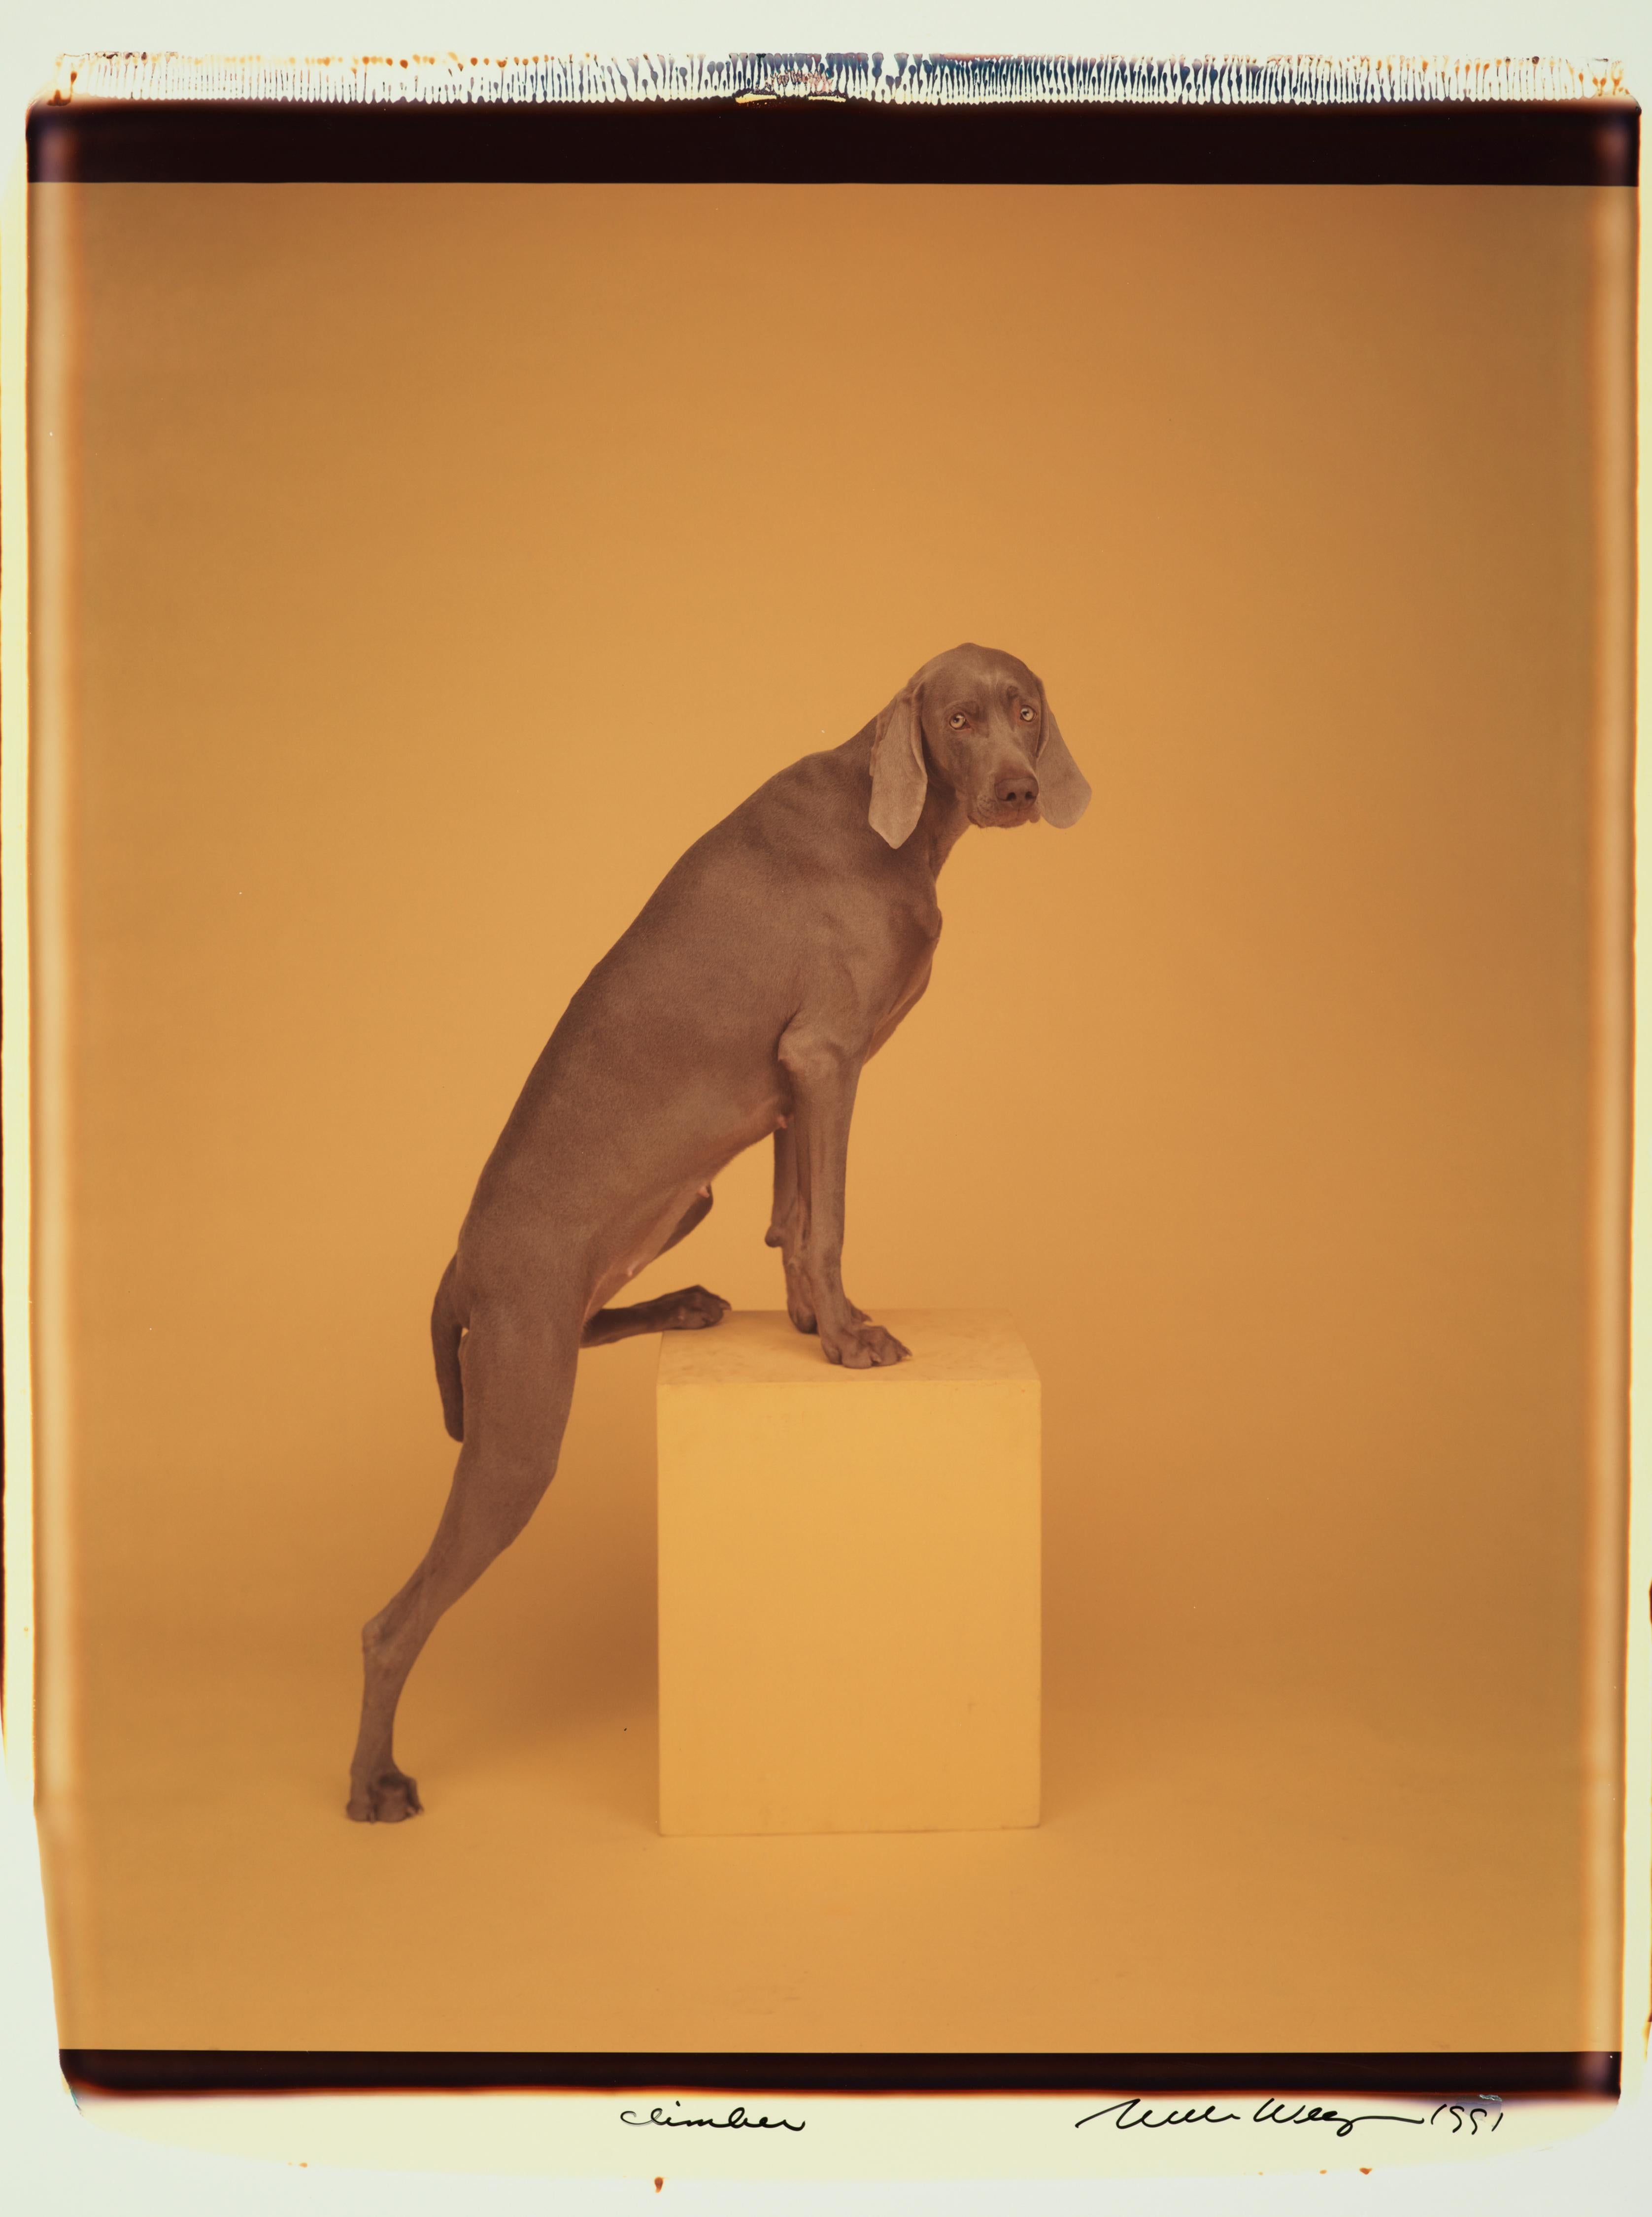 Climber - William Wegman (Farbfotografie)
Signiert und beschriftet mit Titel
Einzigartiger Farb-Polaroiddruck, gedruckt 1991
24 x 20 Zoll

Die Hunde, die mit Perücken, Kostümen und Requisiten ausgestattet sind, zeigen eine breite Palette